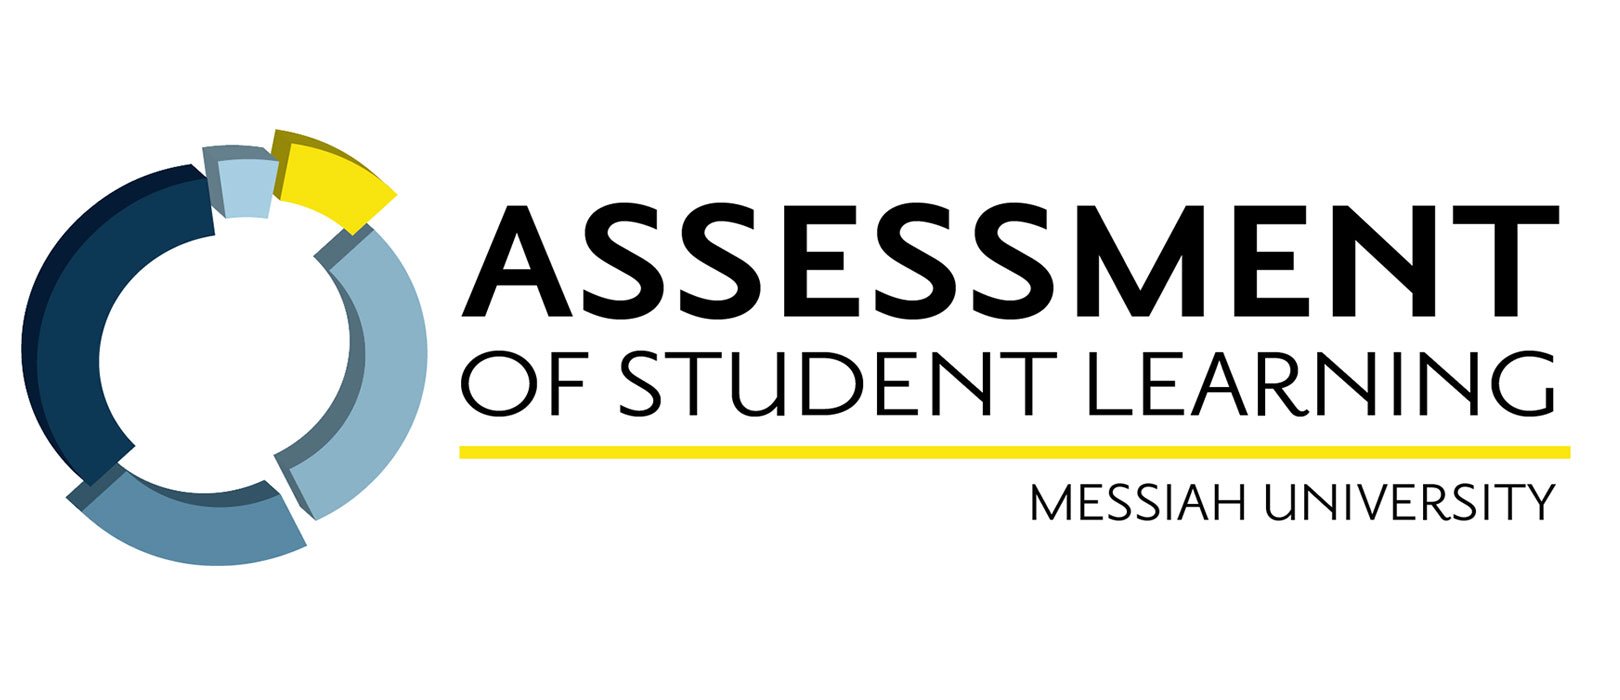 Assessment of Student Learning assessment.jpg